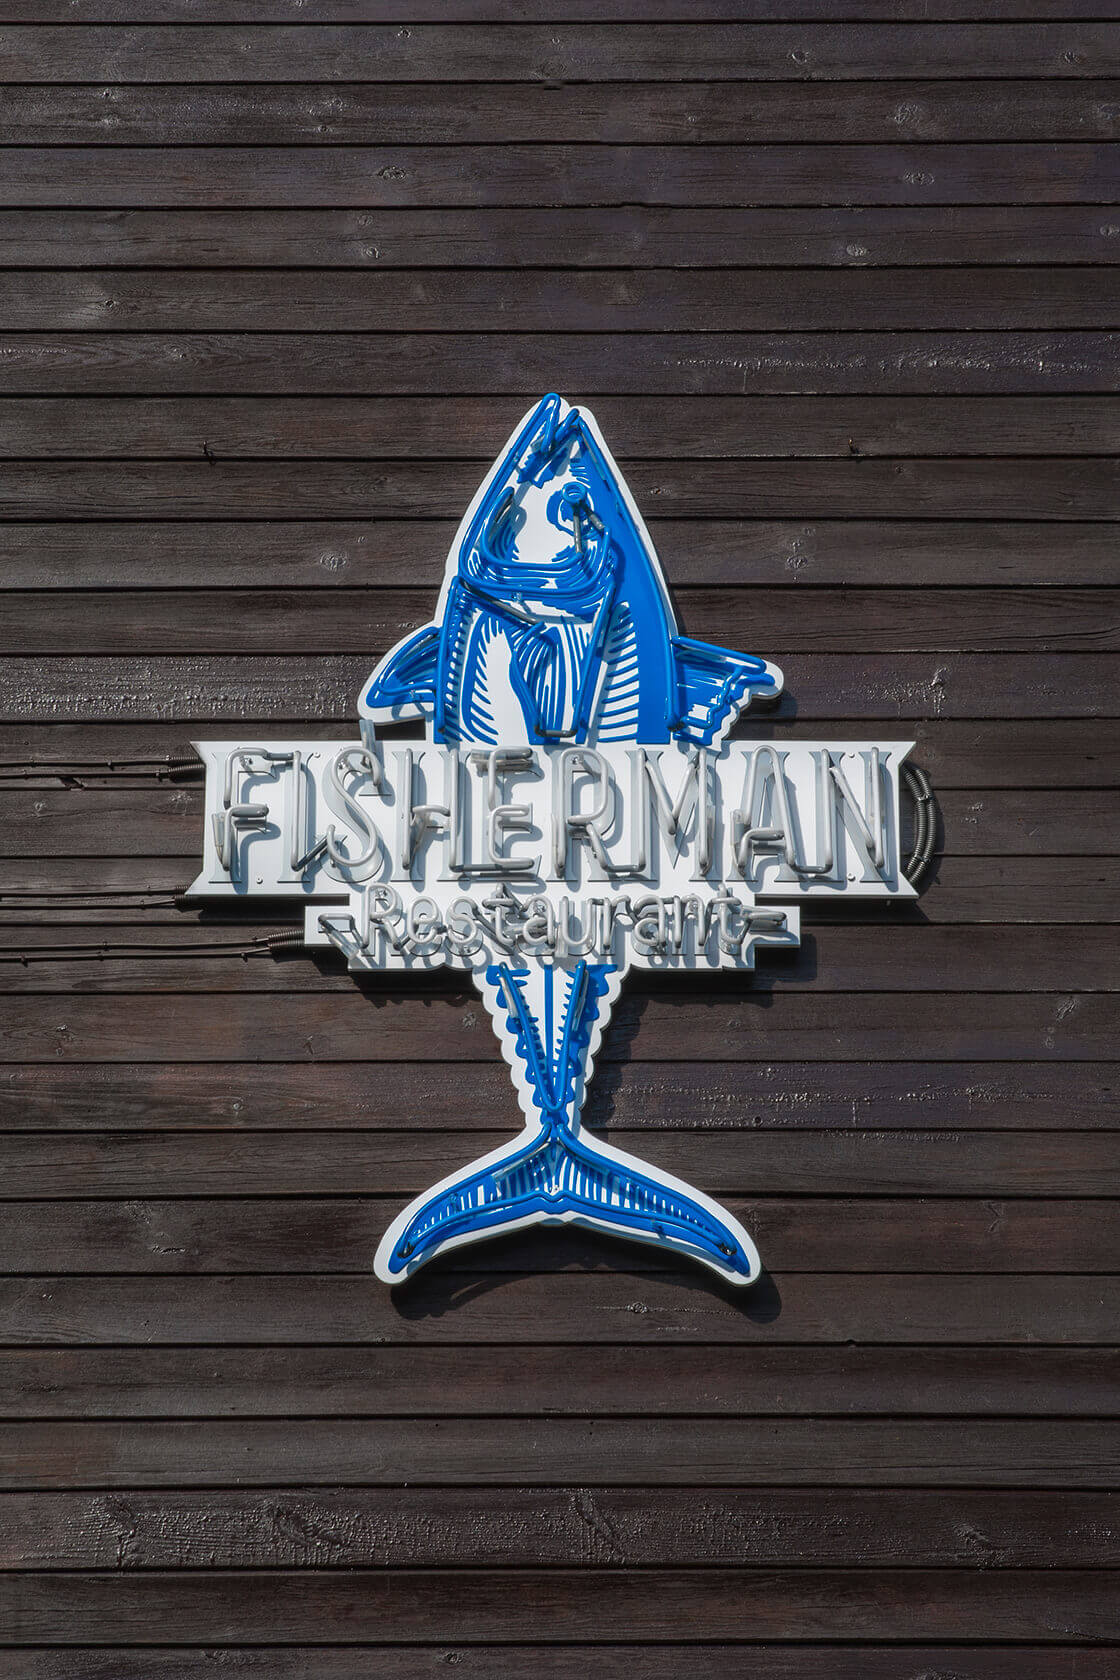 fisherman fisher man - fisherman-restauracja-neon-niebieski-bialy-neon-na-scianie-restauracji-neon-na-deskach-neon-na-wysokosci-podswietlany-ryba-neon-przy-wejsciu-sopot (28).jpg.jpg